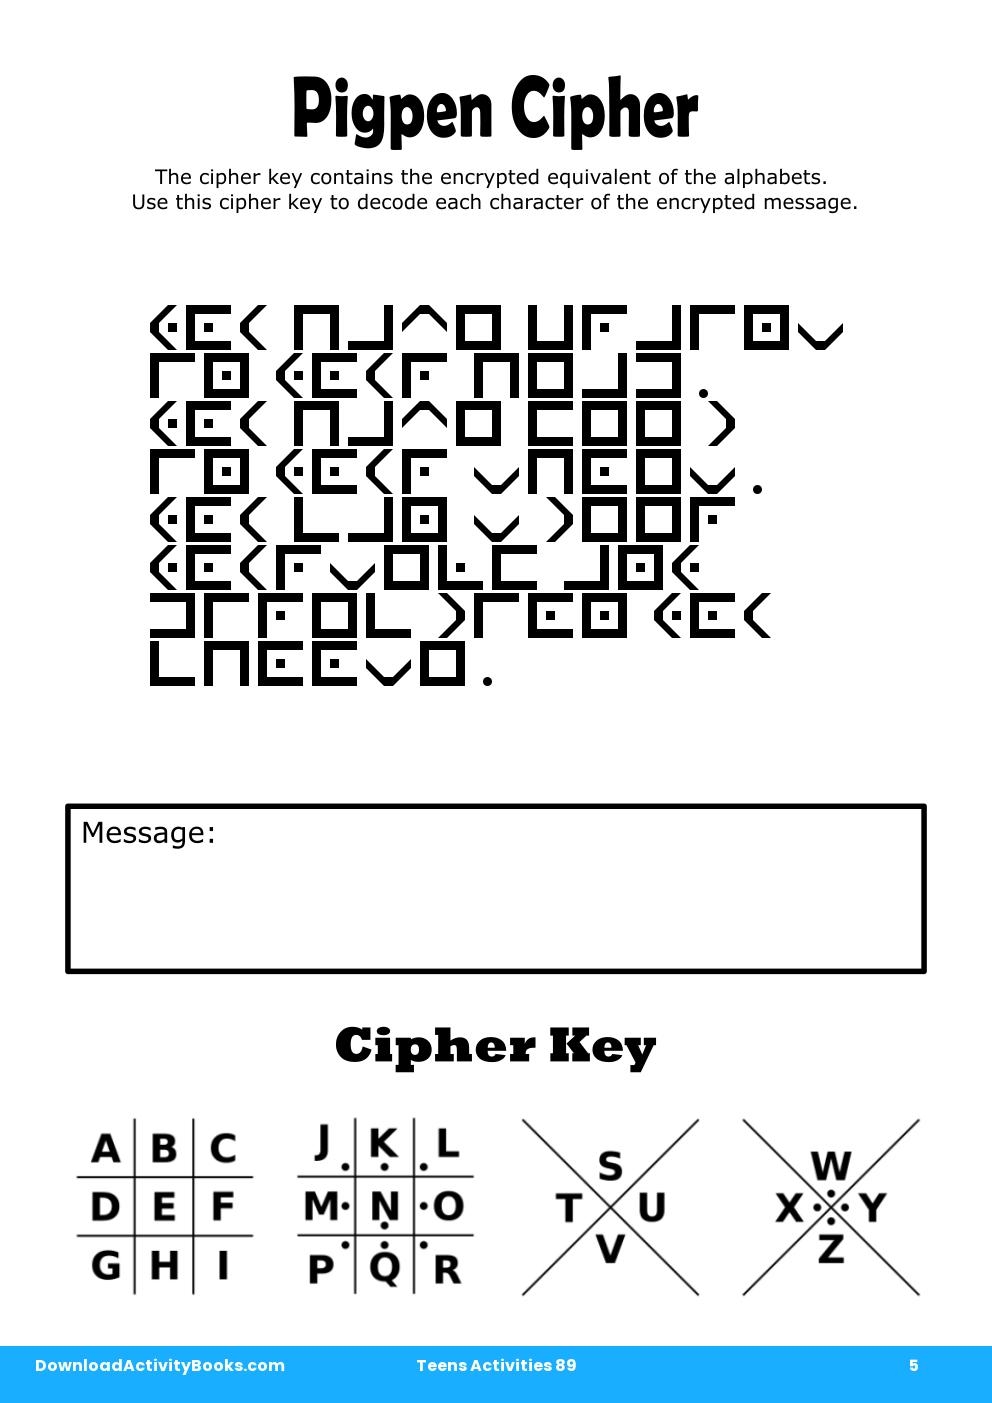 Pigpen Cipher in Teens Activities 89